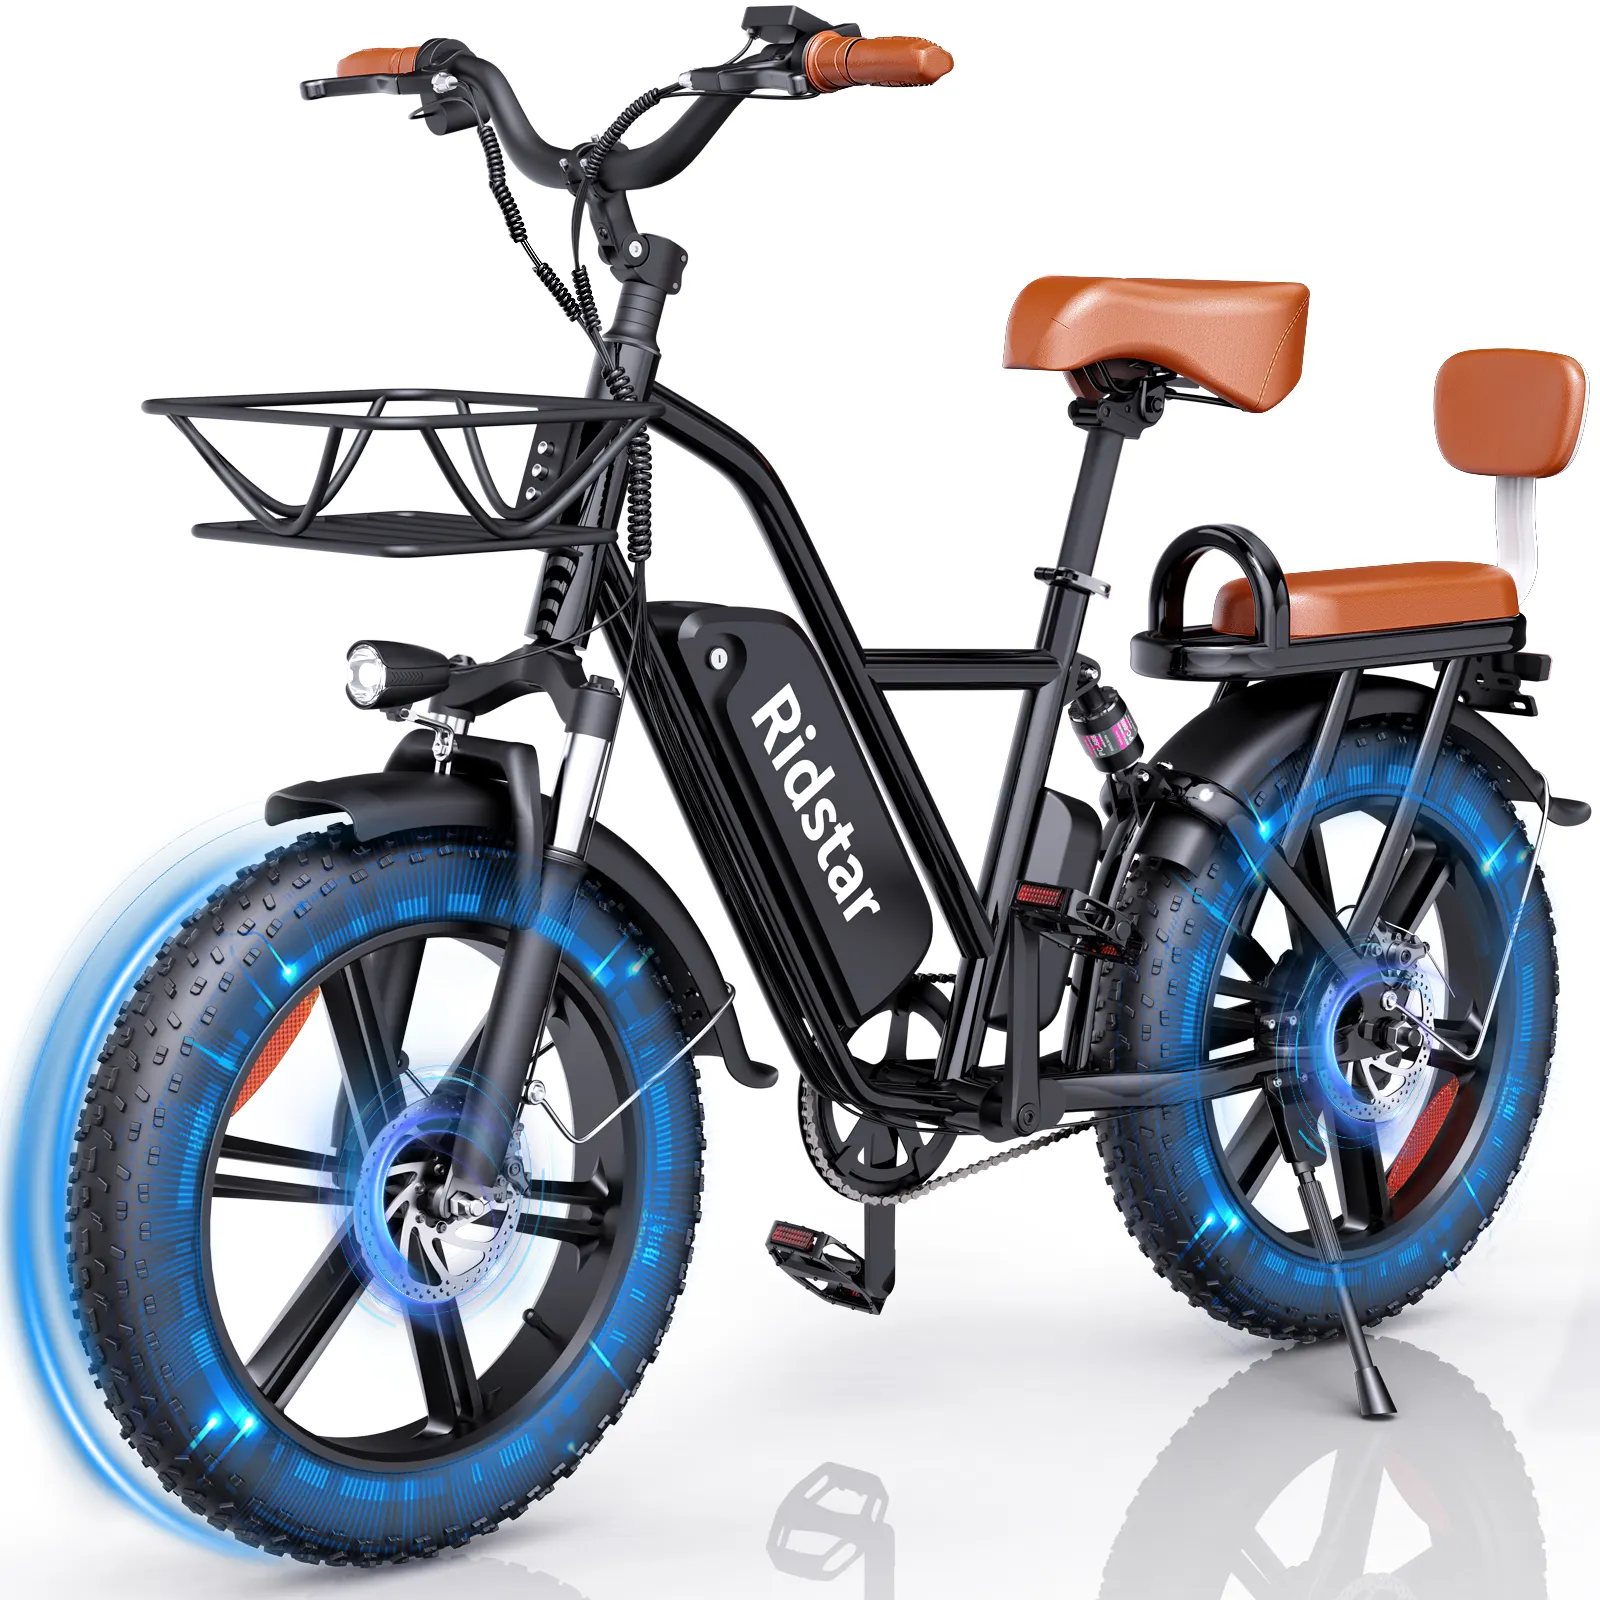 Ücretsiz kargo kalın lastik Eletrica Bicicleta 20 inç jantlar 500W Kids elektrikli bisiklet çocuk koltuğu ile